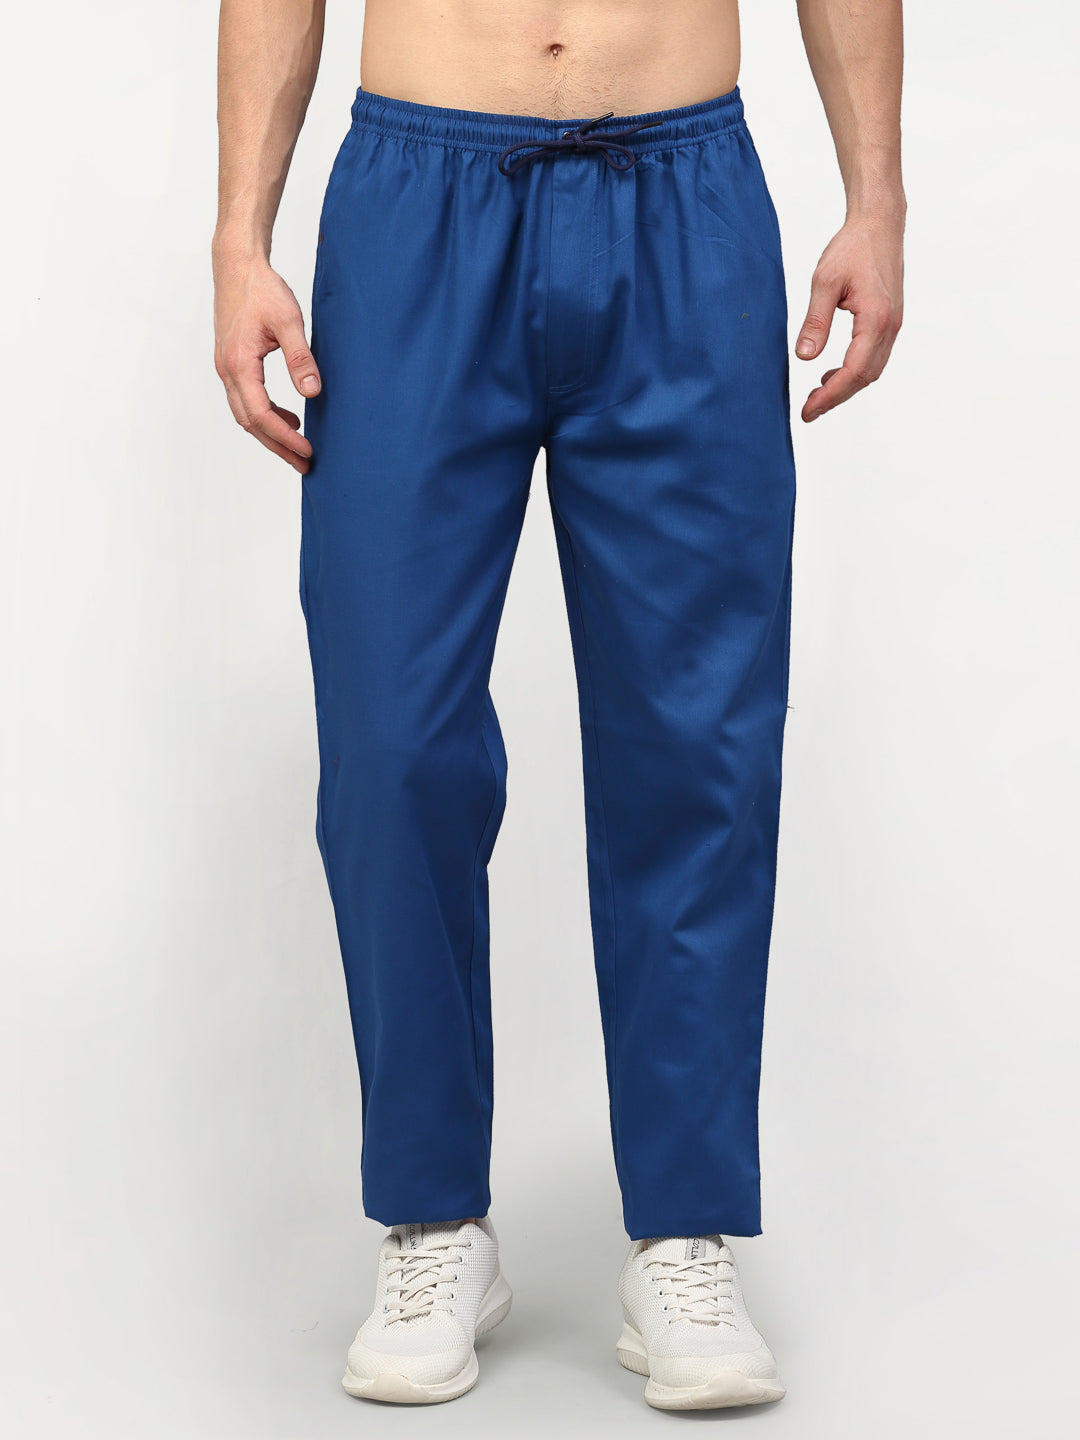 Jainish Men's Cotton Solid Track Pants - Blue - Distacart